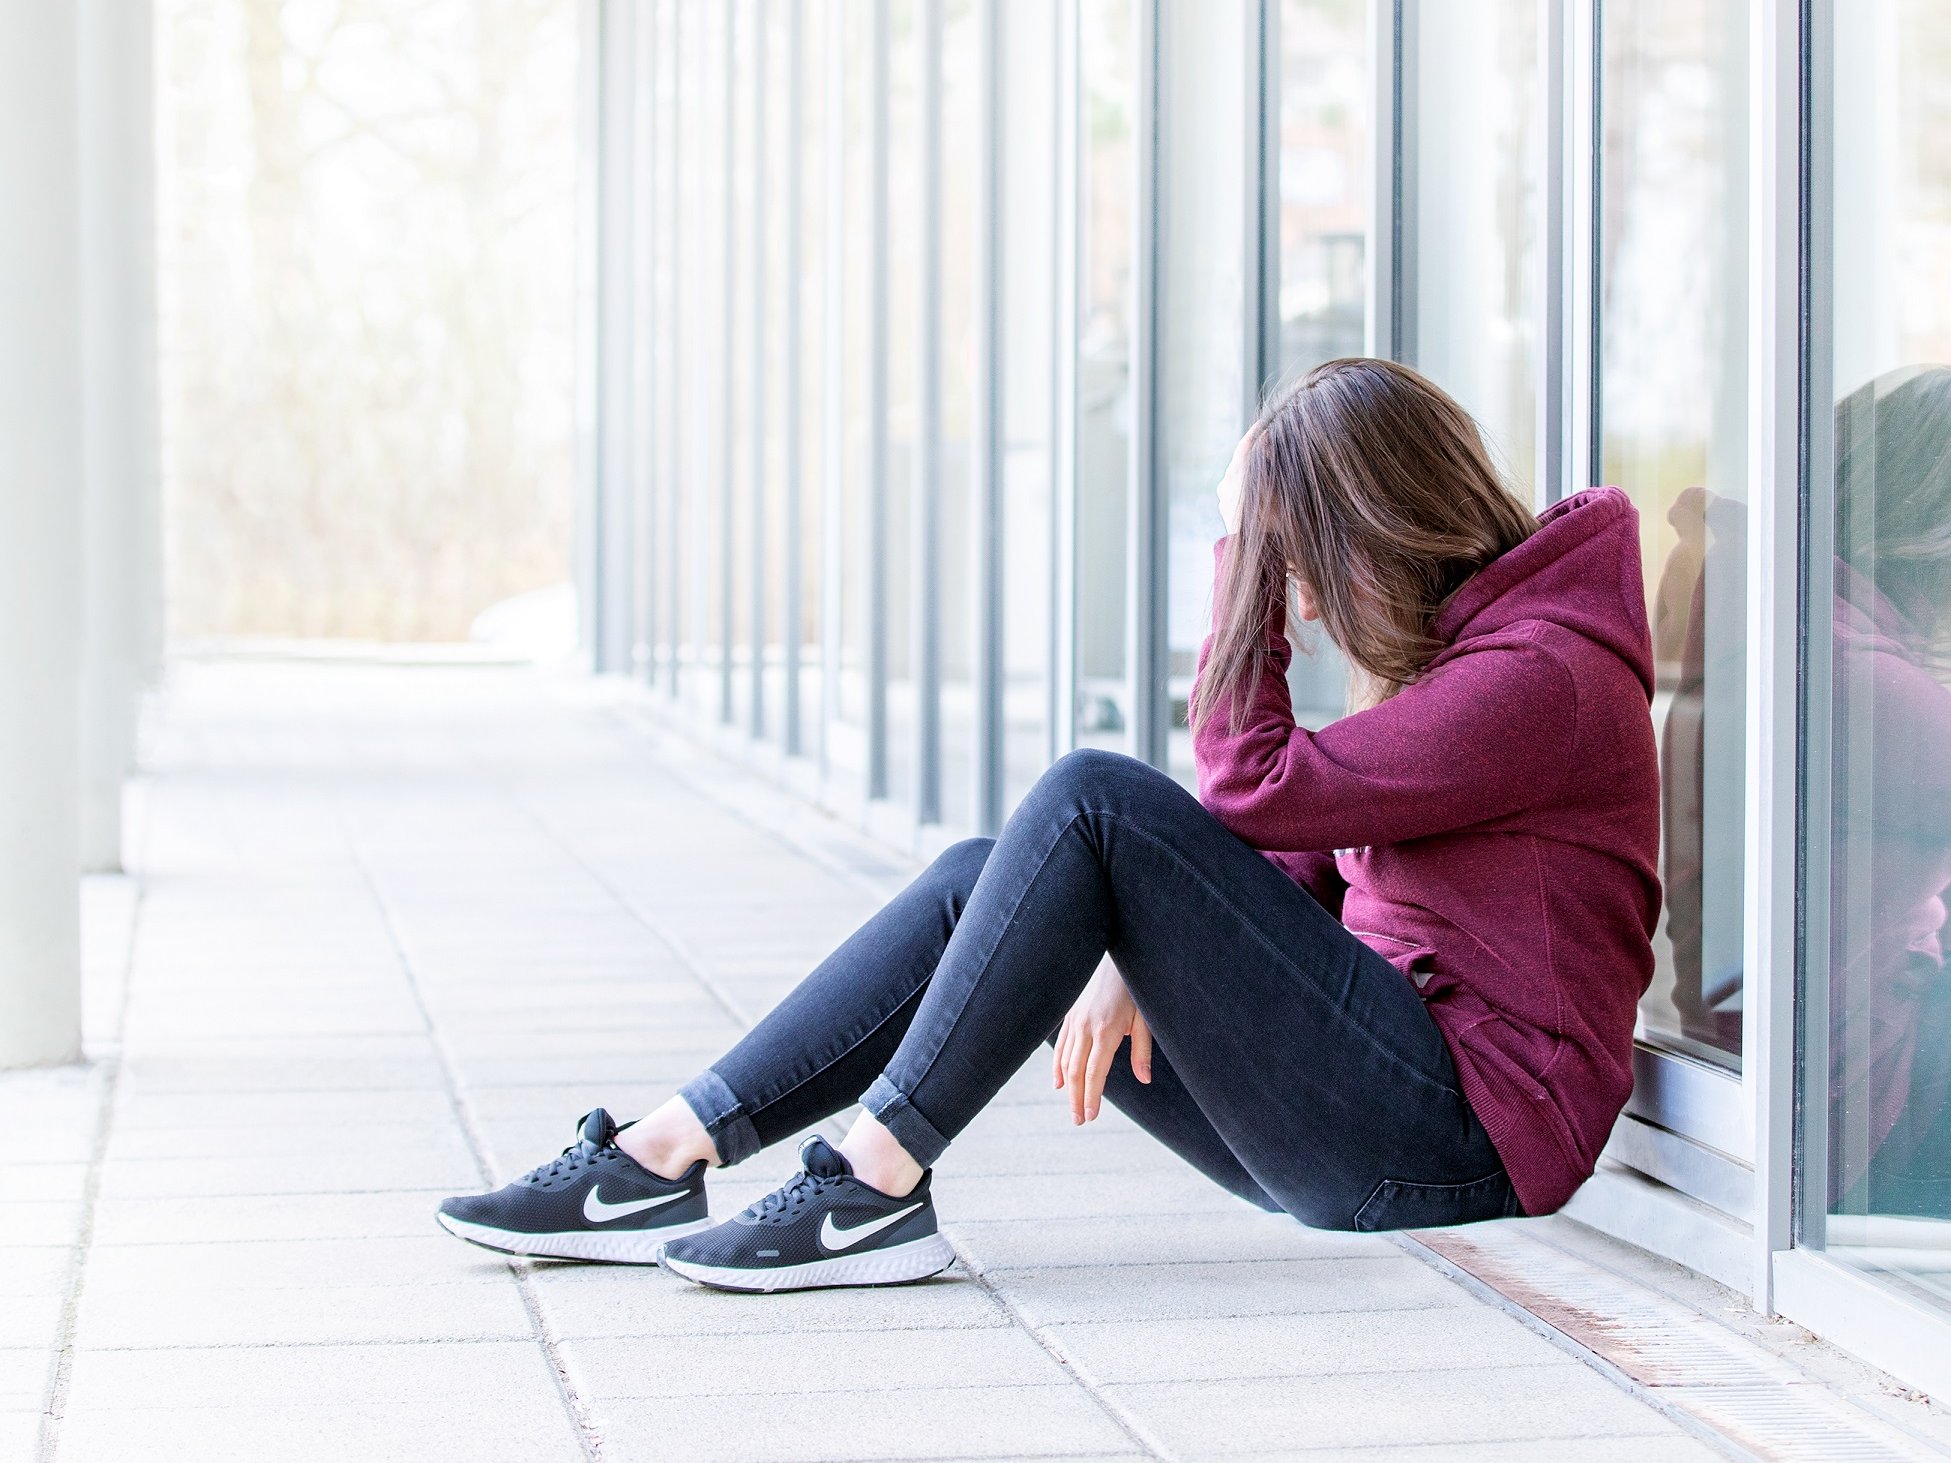 eine junge Frau mit braunen Haaren sitzt im Bild rechts and eine Glasfassade gelehnt, hat die Knie angewinkelt und stützt den Kopf mit der Hand ab